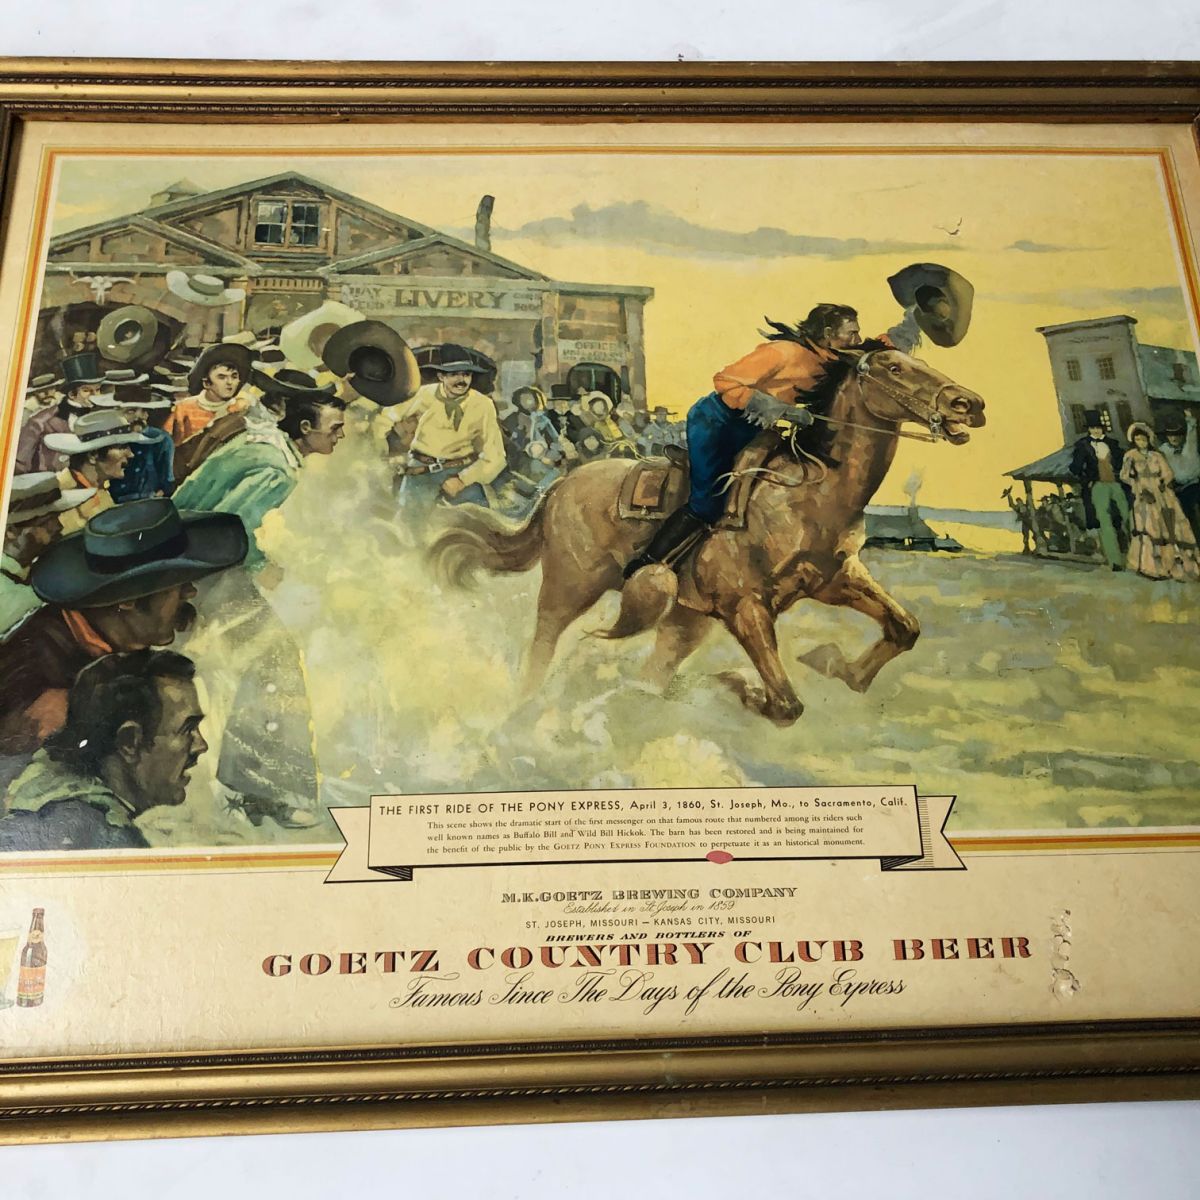 Original Goetz Country Club Beer Advertising Sign